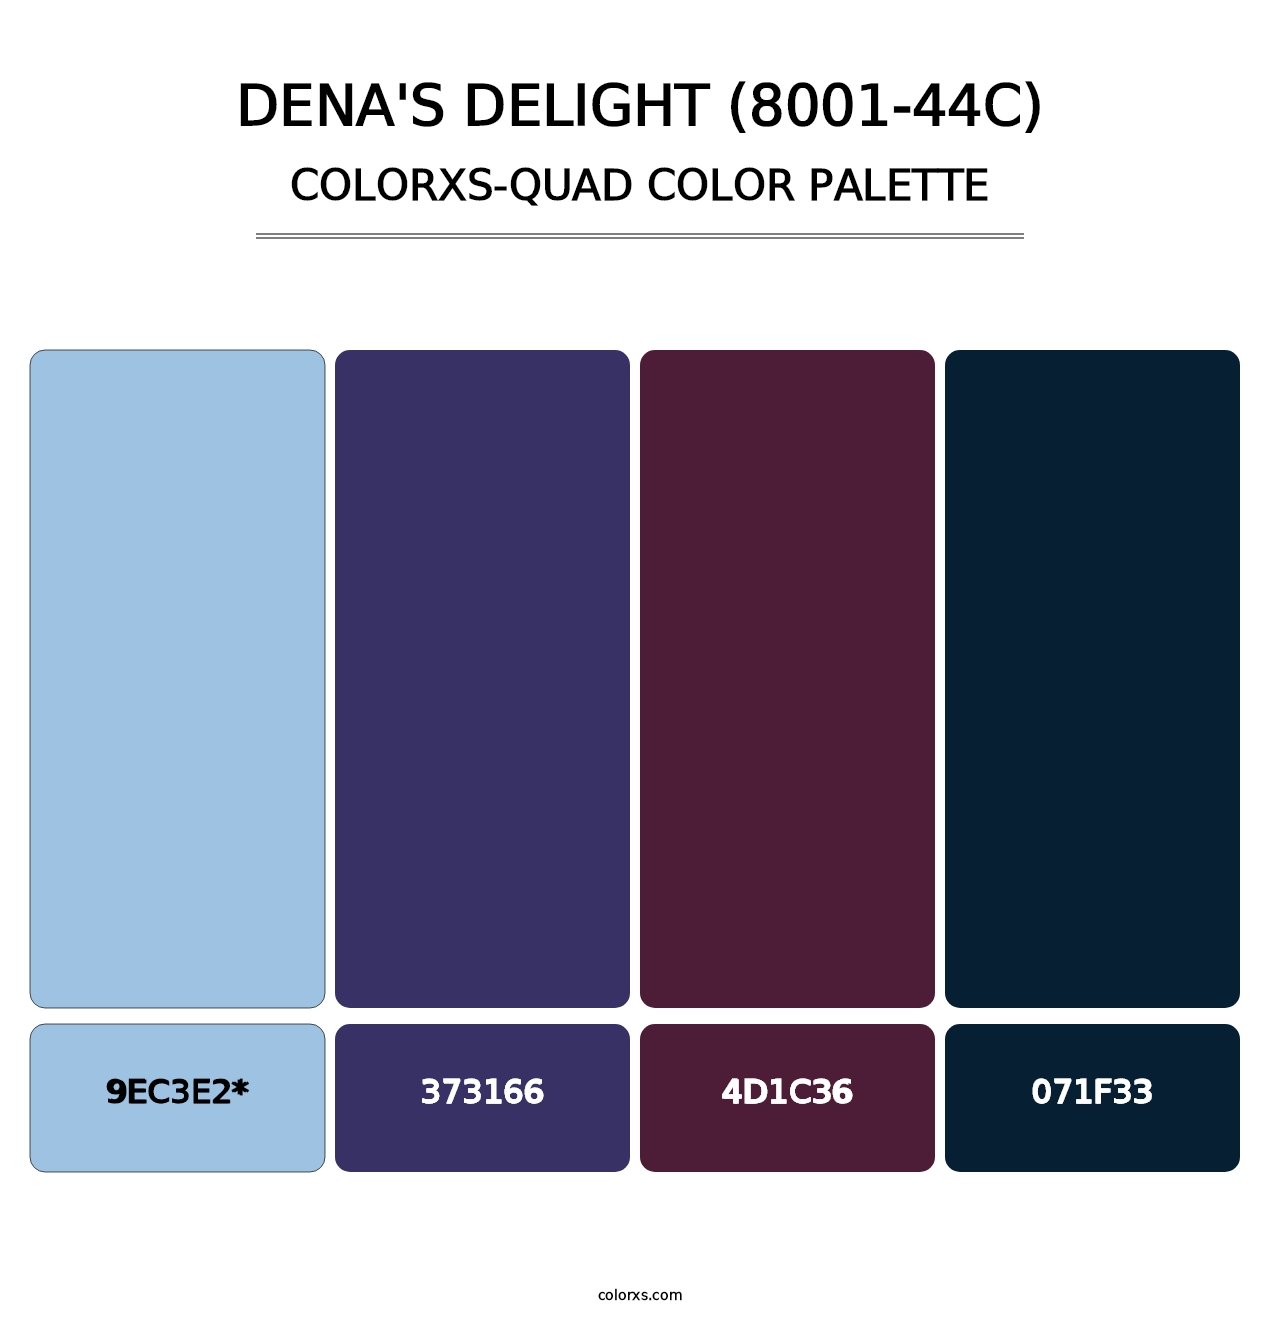 Dena's Delight (8001-44C) - Colorxs Quad Palette